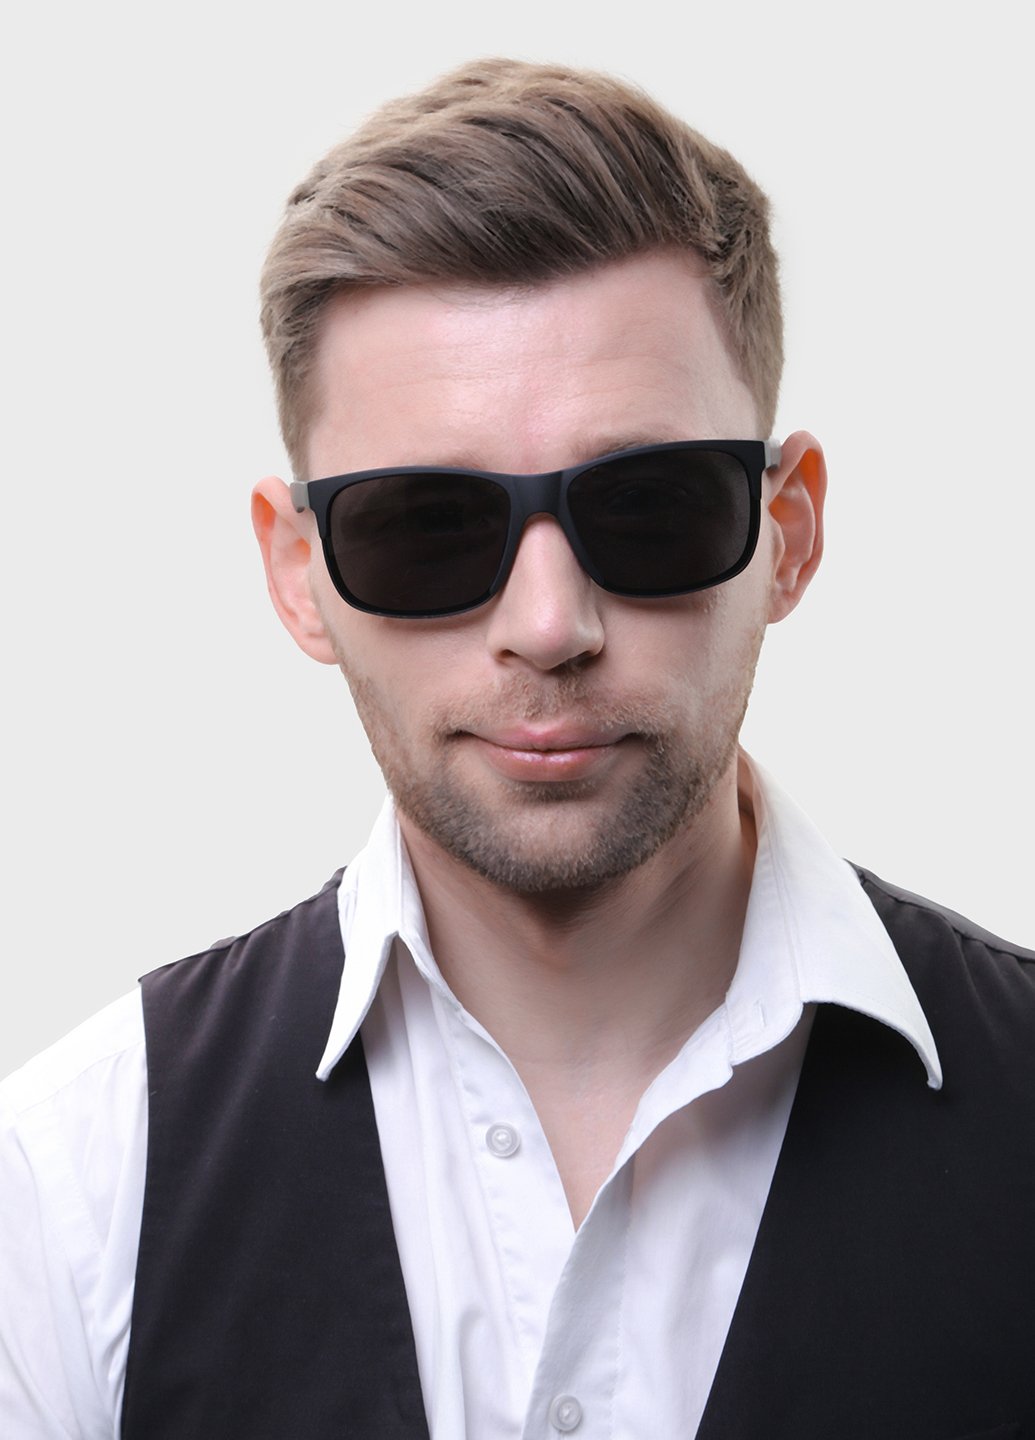 Купить Черные мужские солнцезащитные очки Matrix с поляризацией MT8596 111022 в интернет-магазине